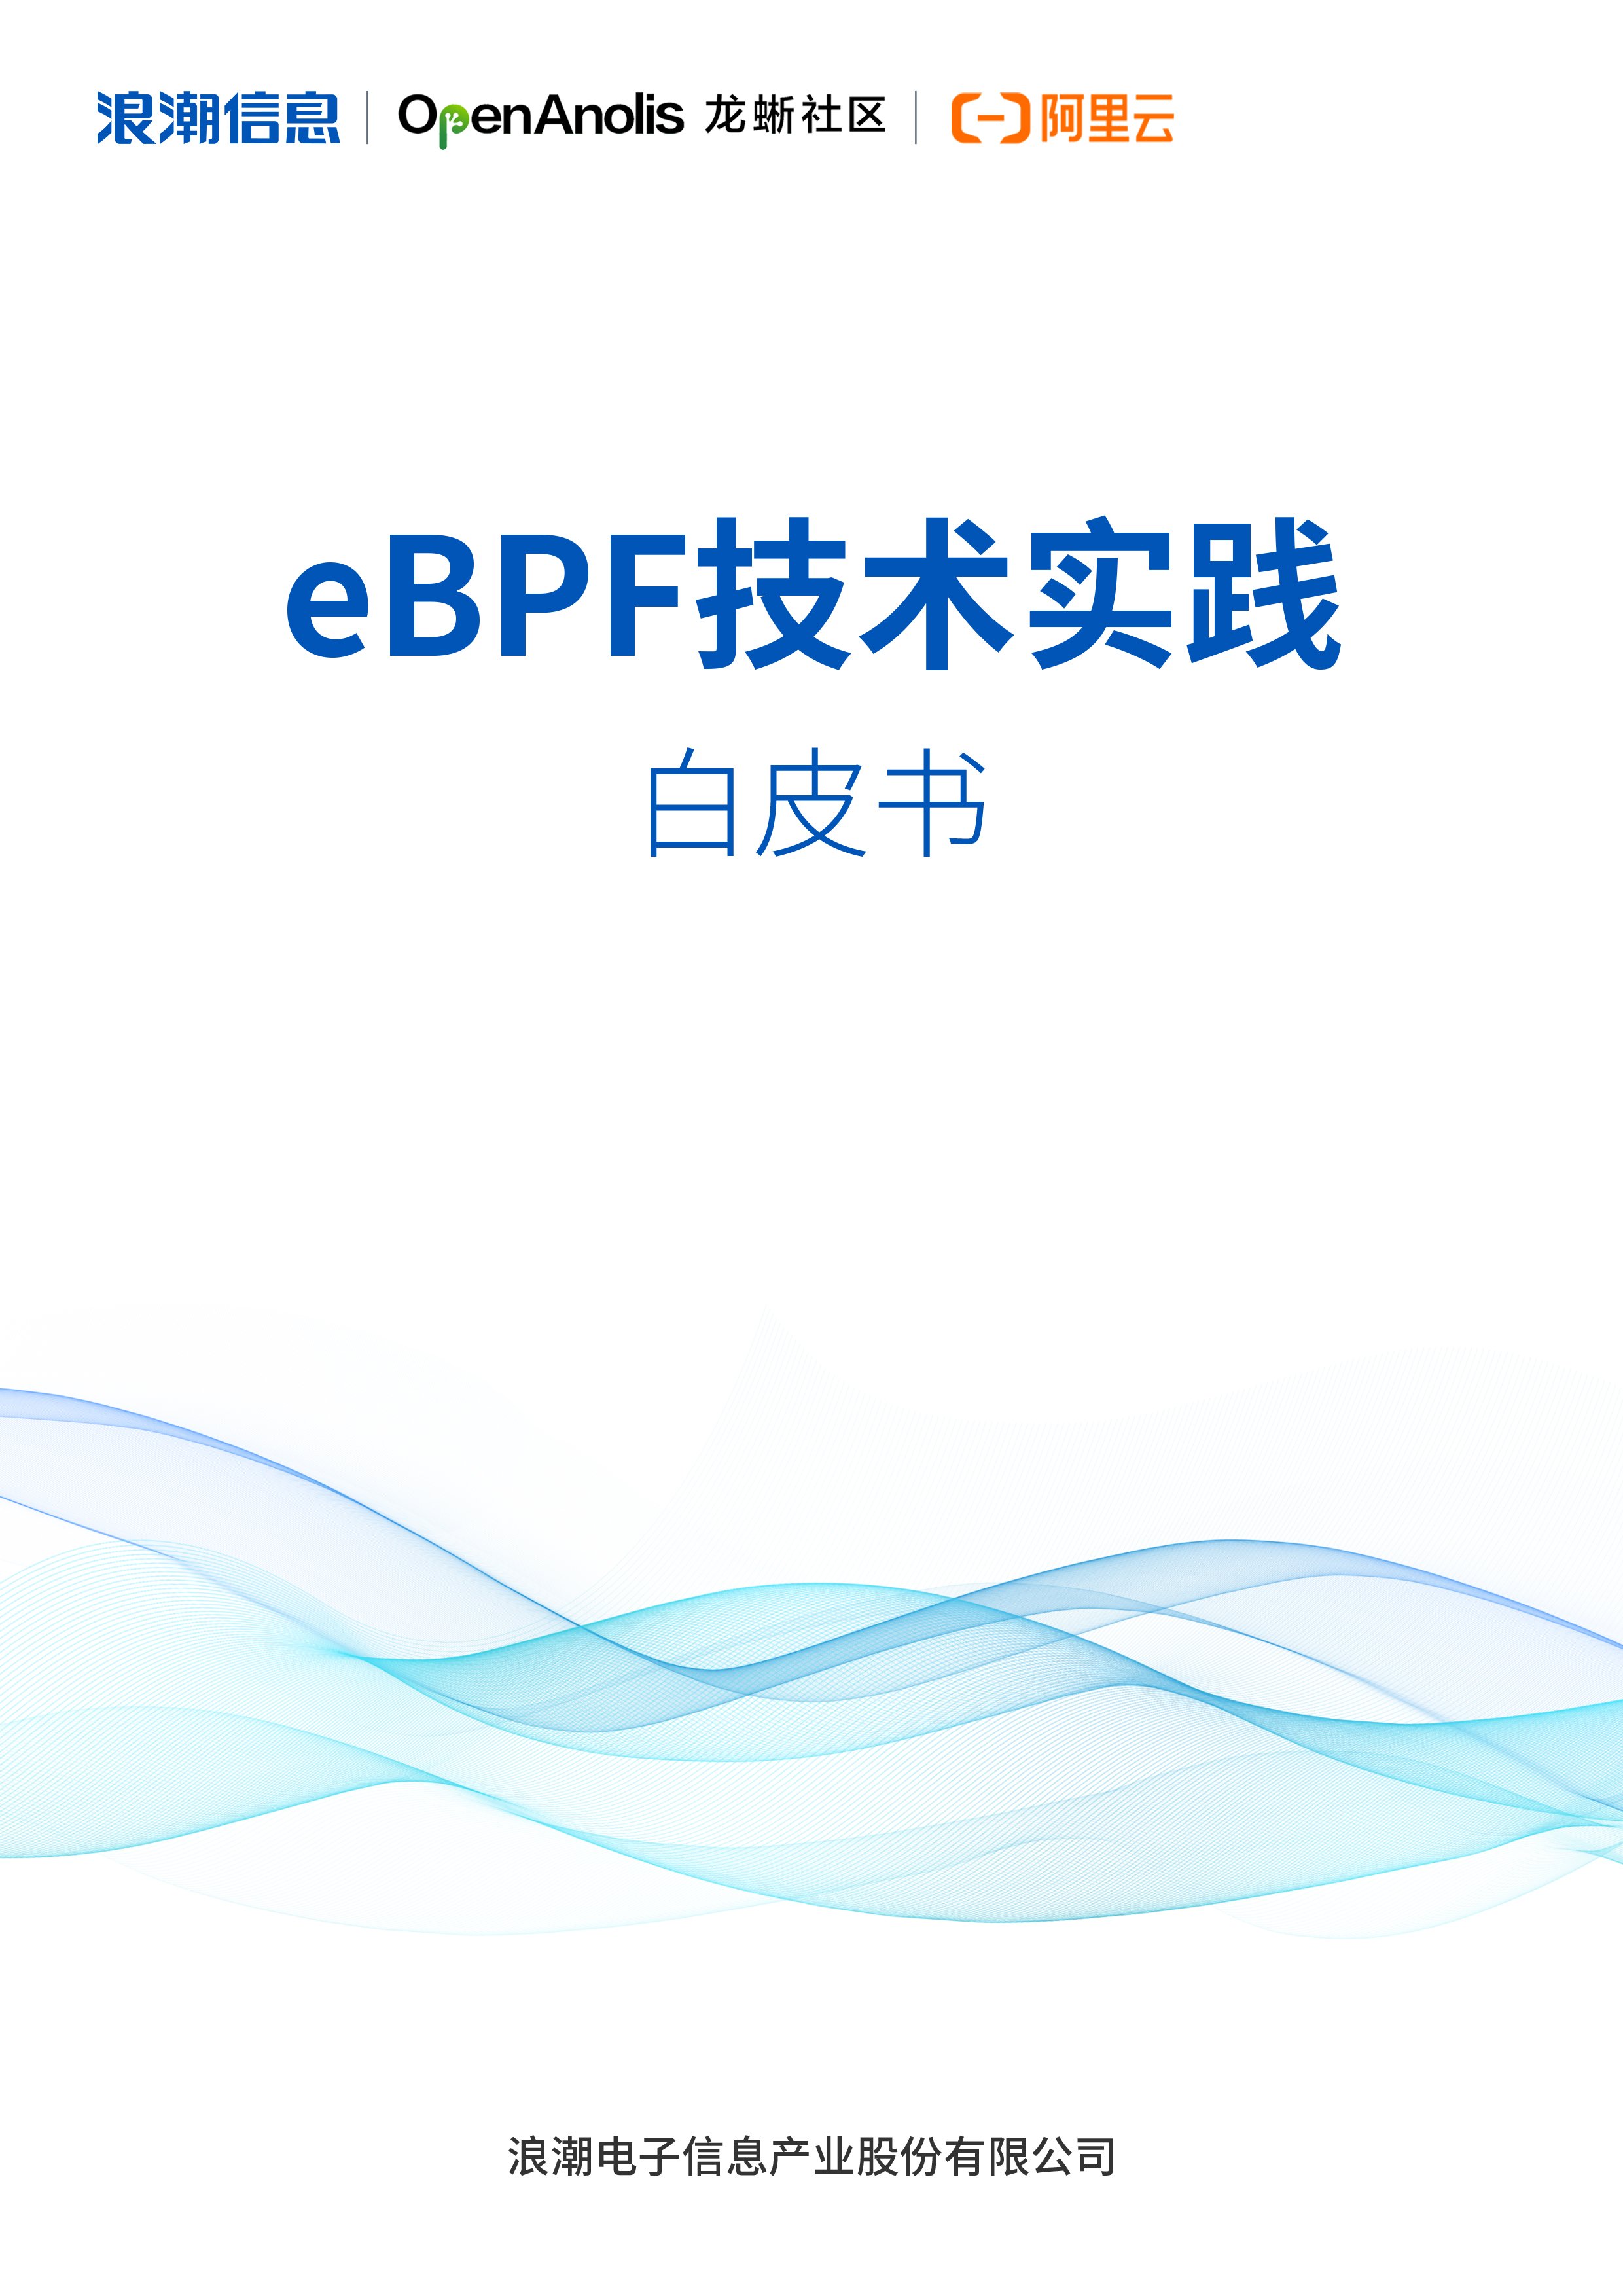 eBPF 技术实践白皮书.jpg